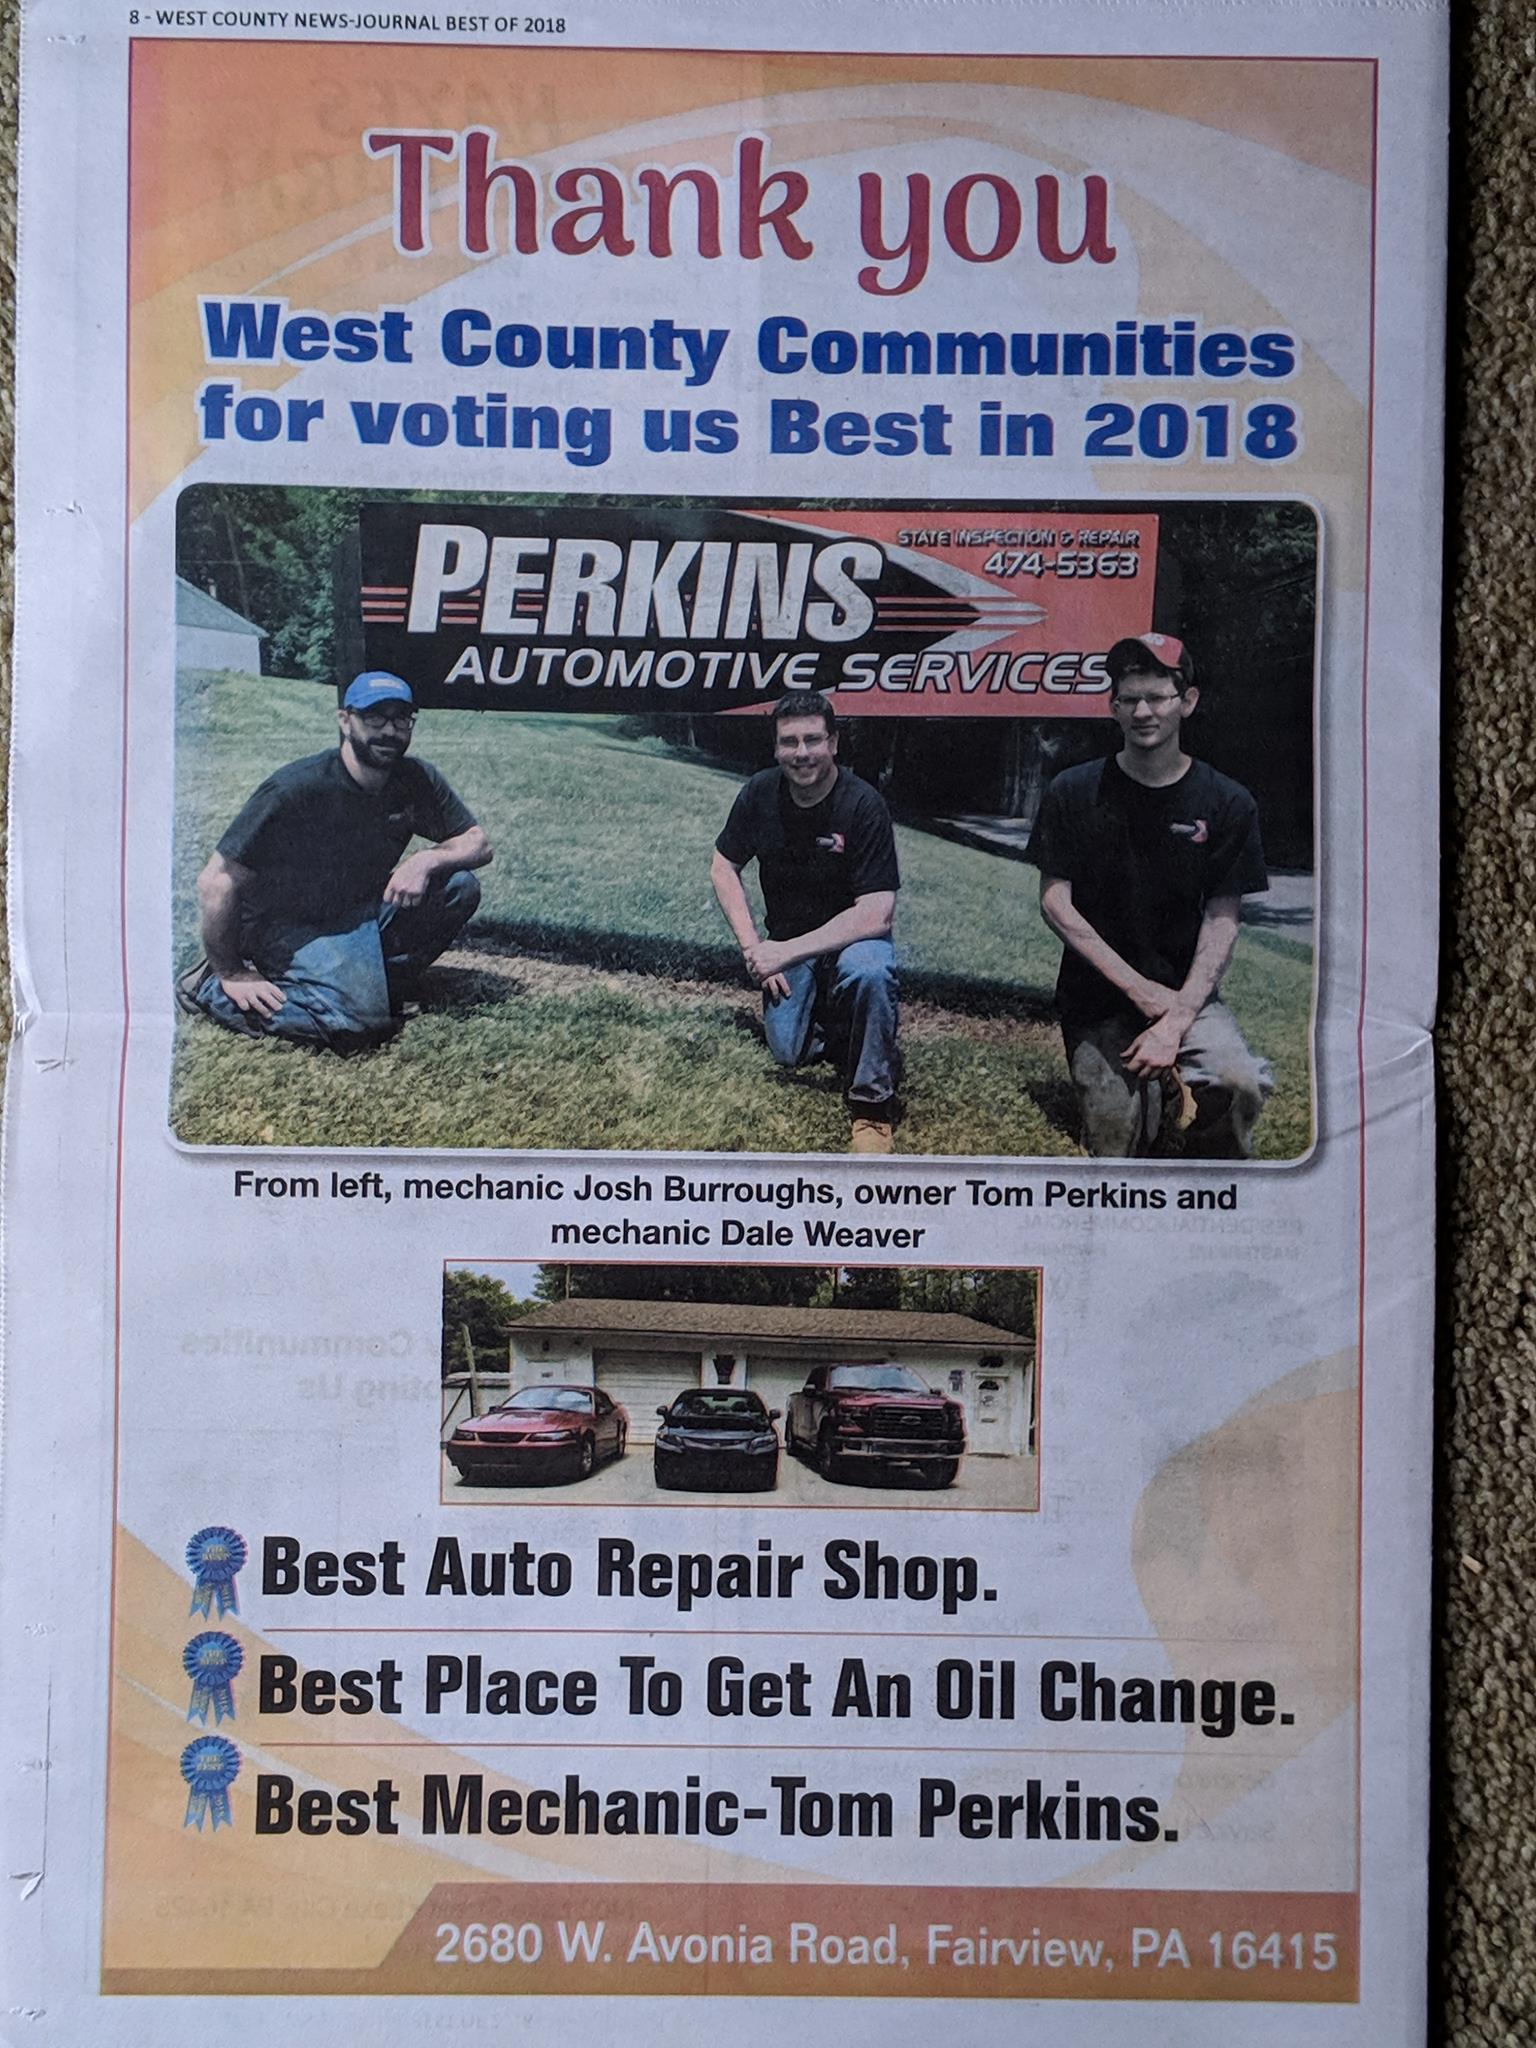 Perkins Automotive Services